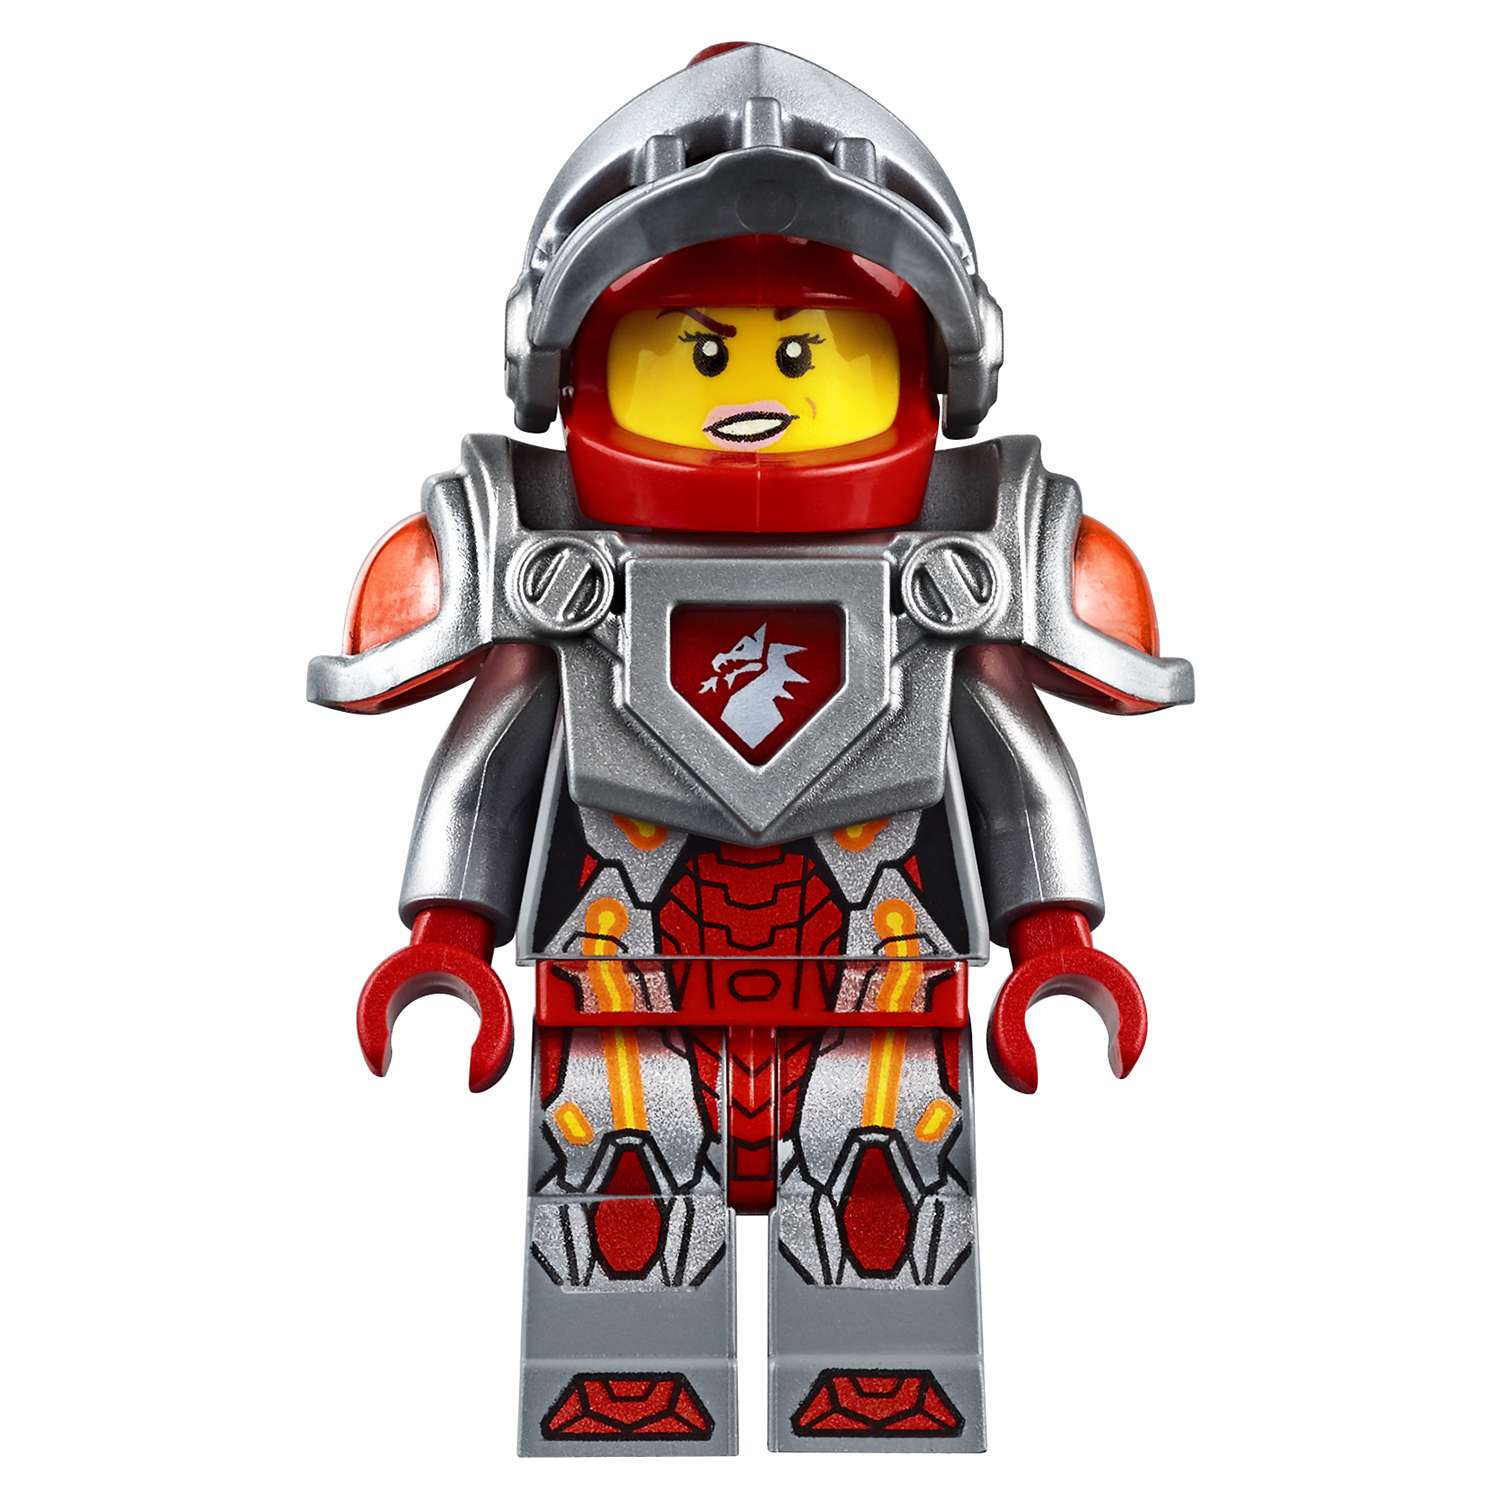 Конструктор LEGO Nexo Knights Молниеносная машина Мэйси (70319) - фото 11